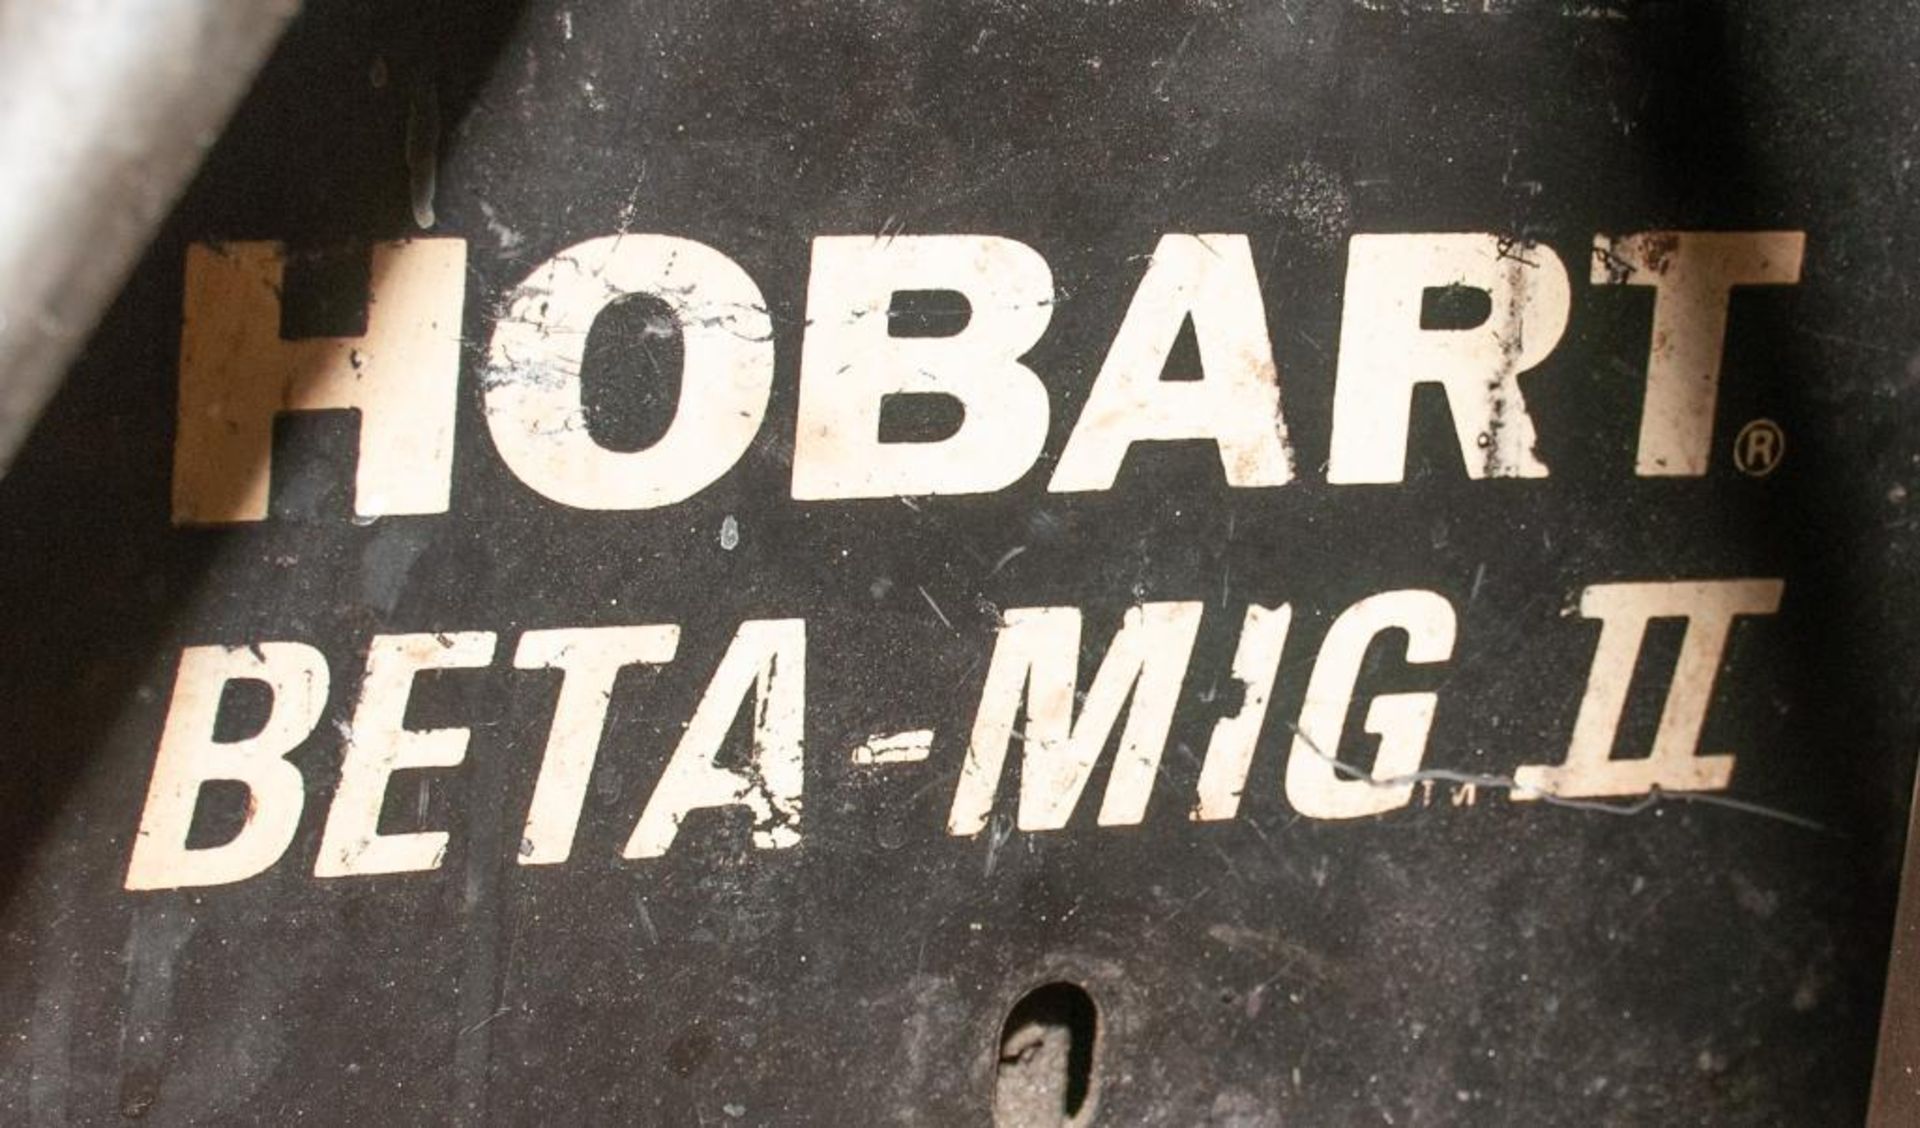 Hobart Beta Mig II - Image 2 of 4